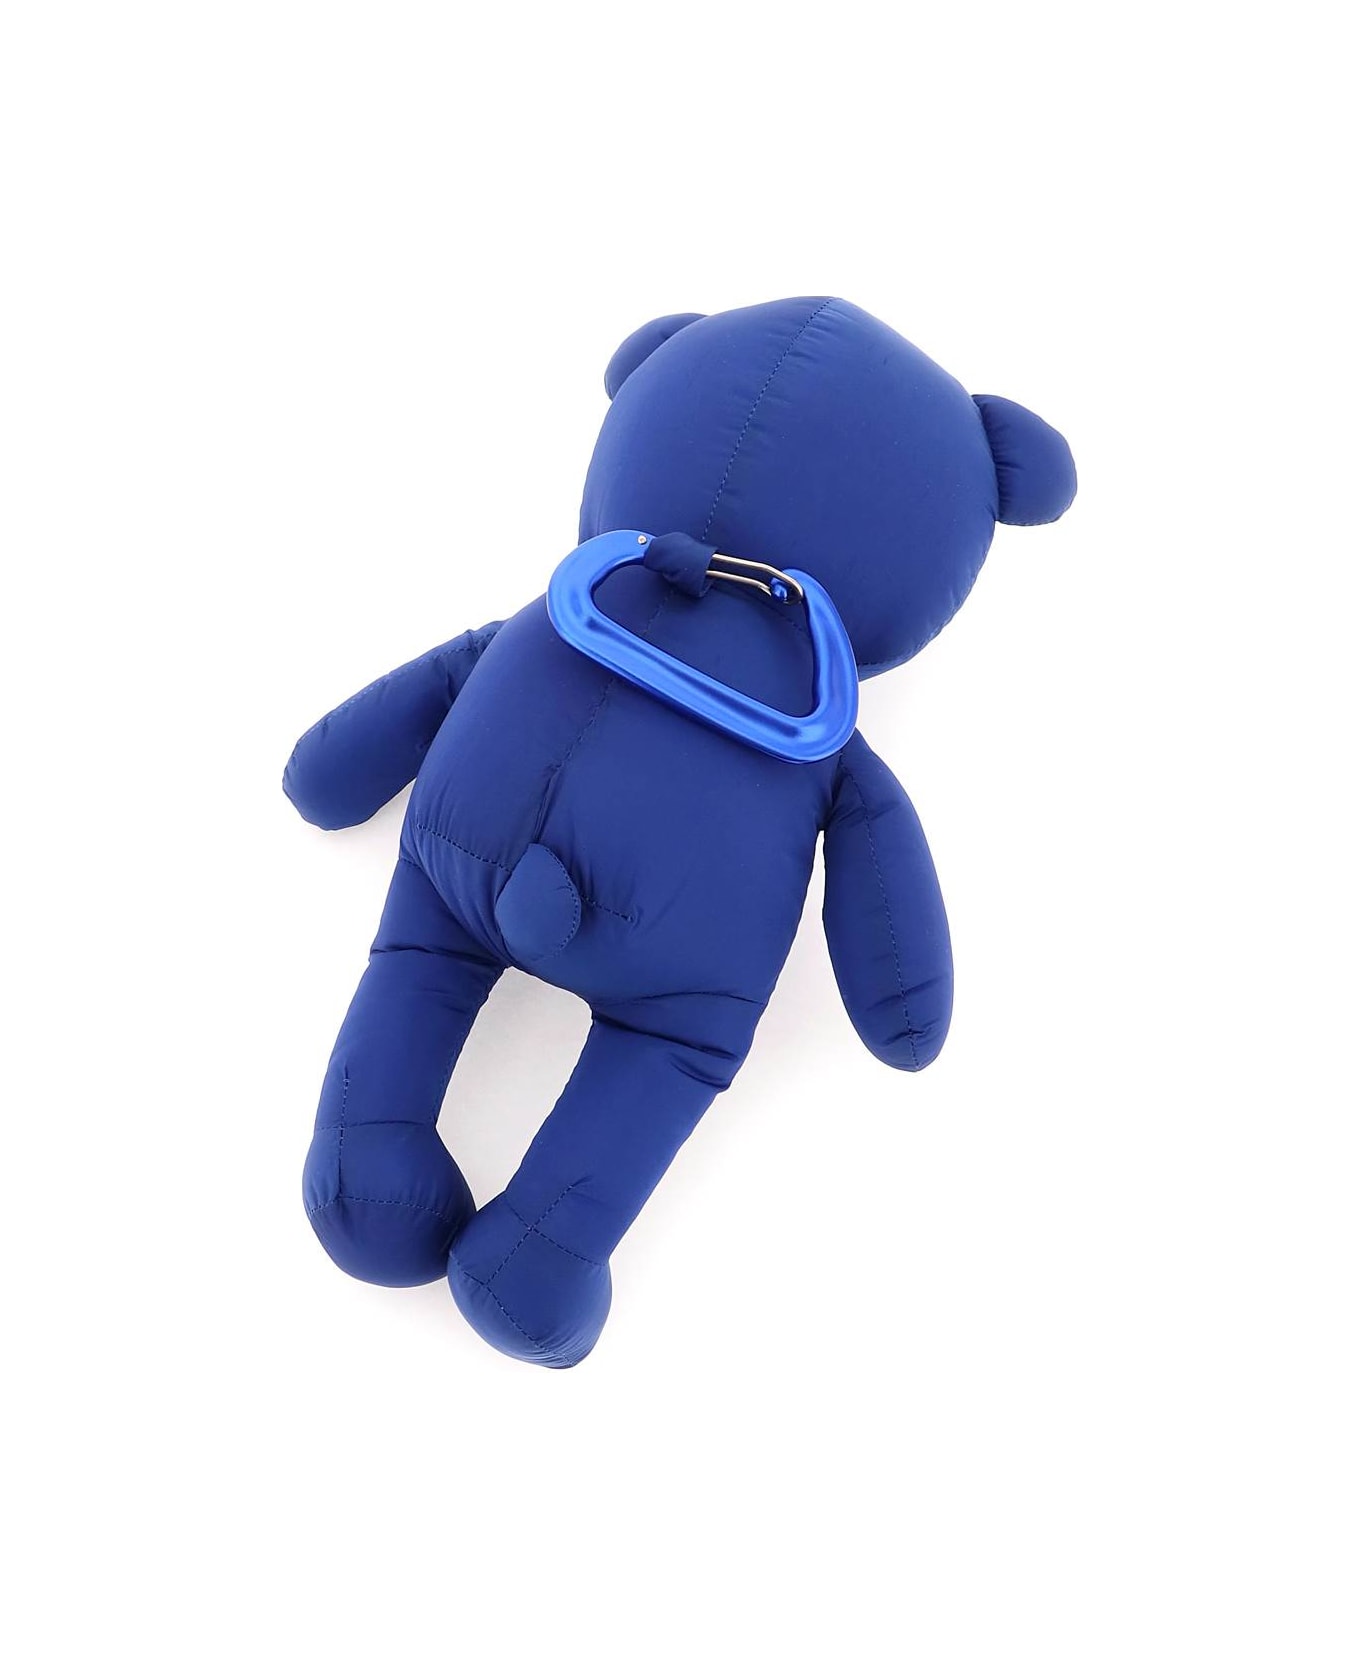 Dsquared2 Teddy Bear Keychain - BLU (Blue)